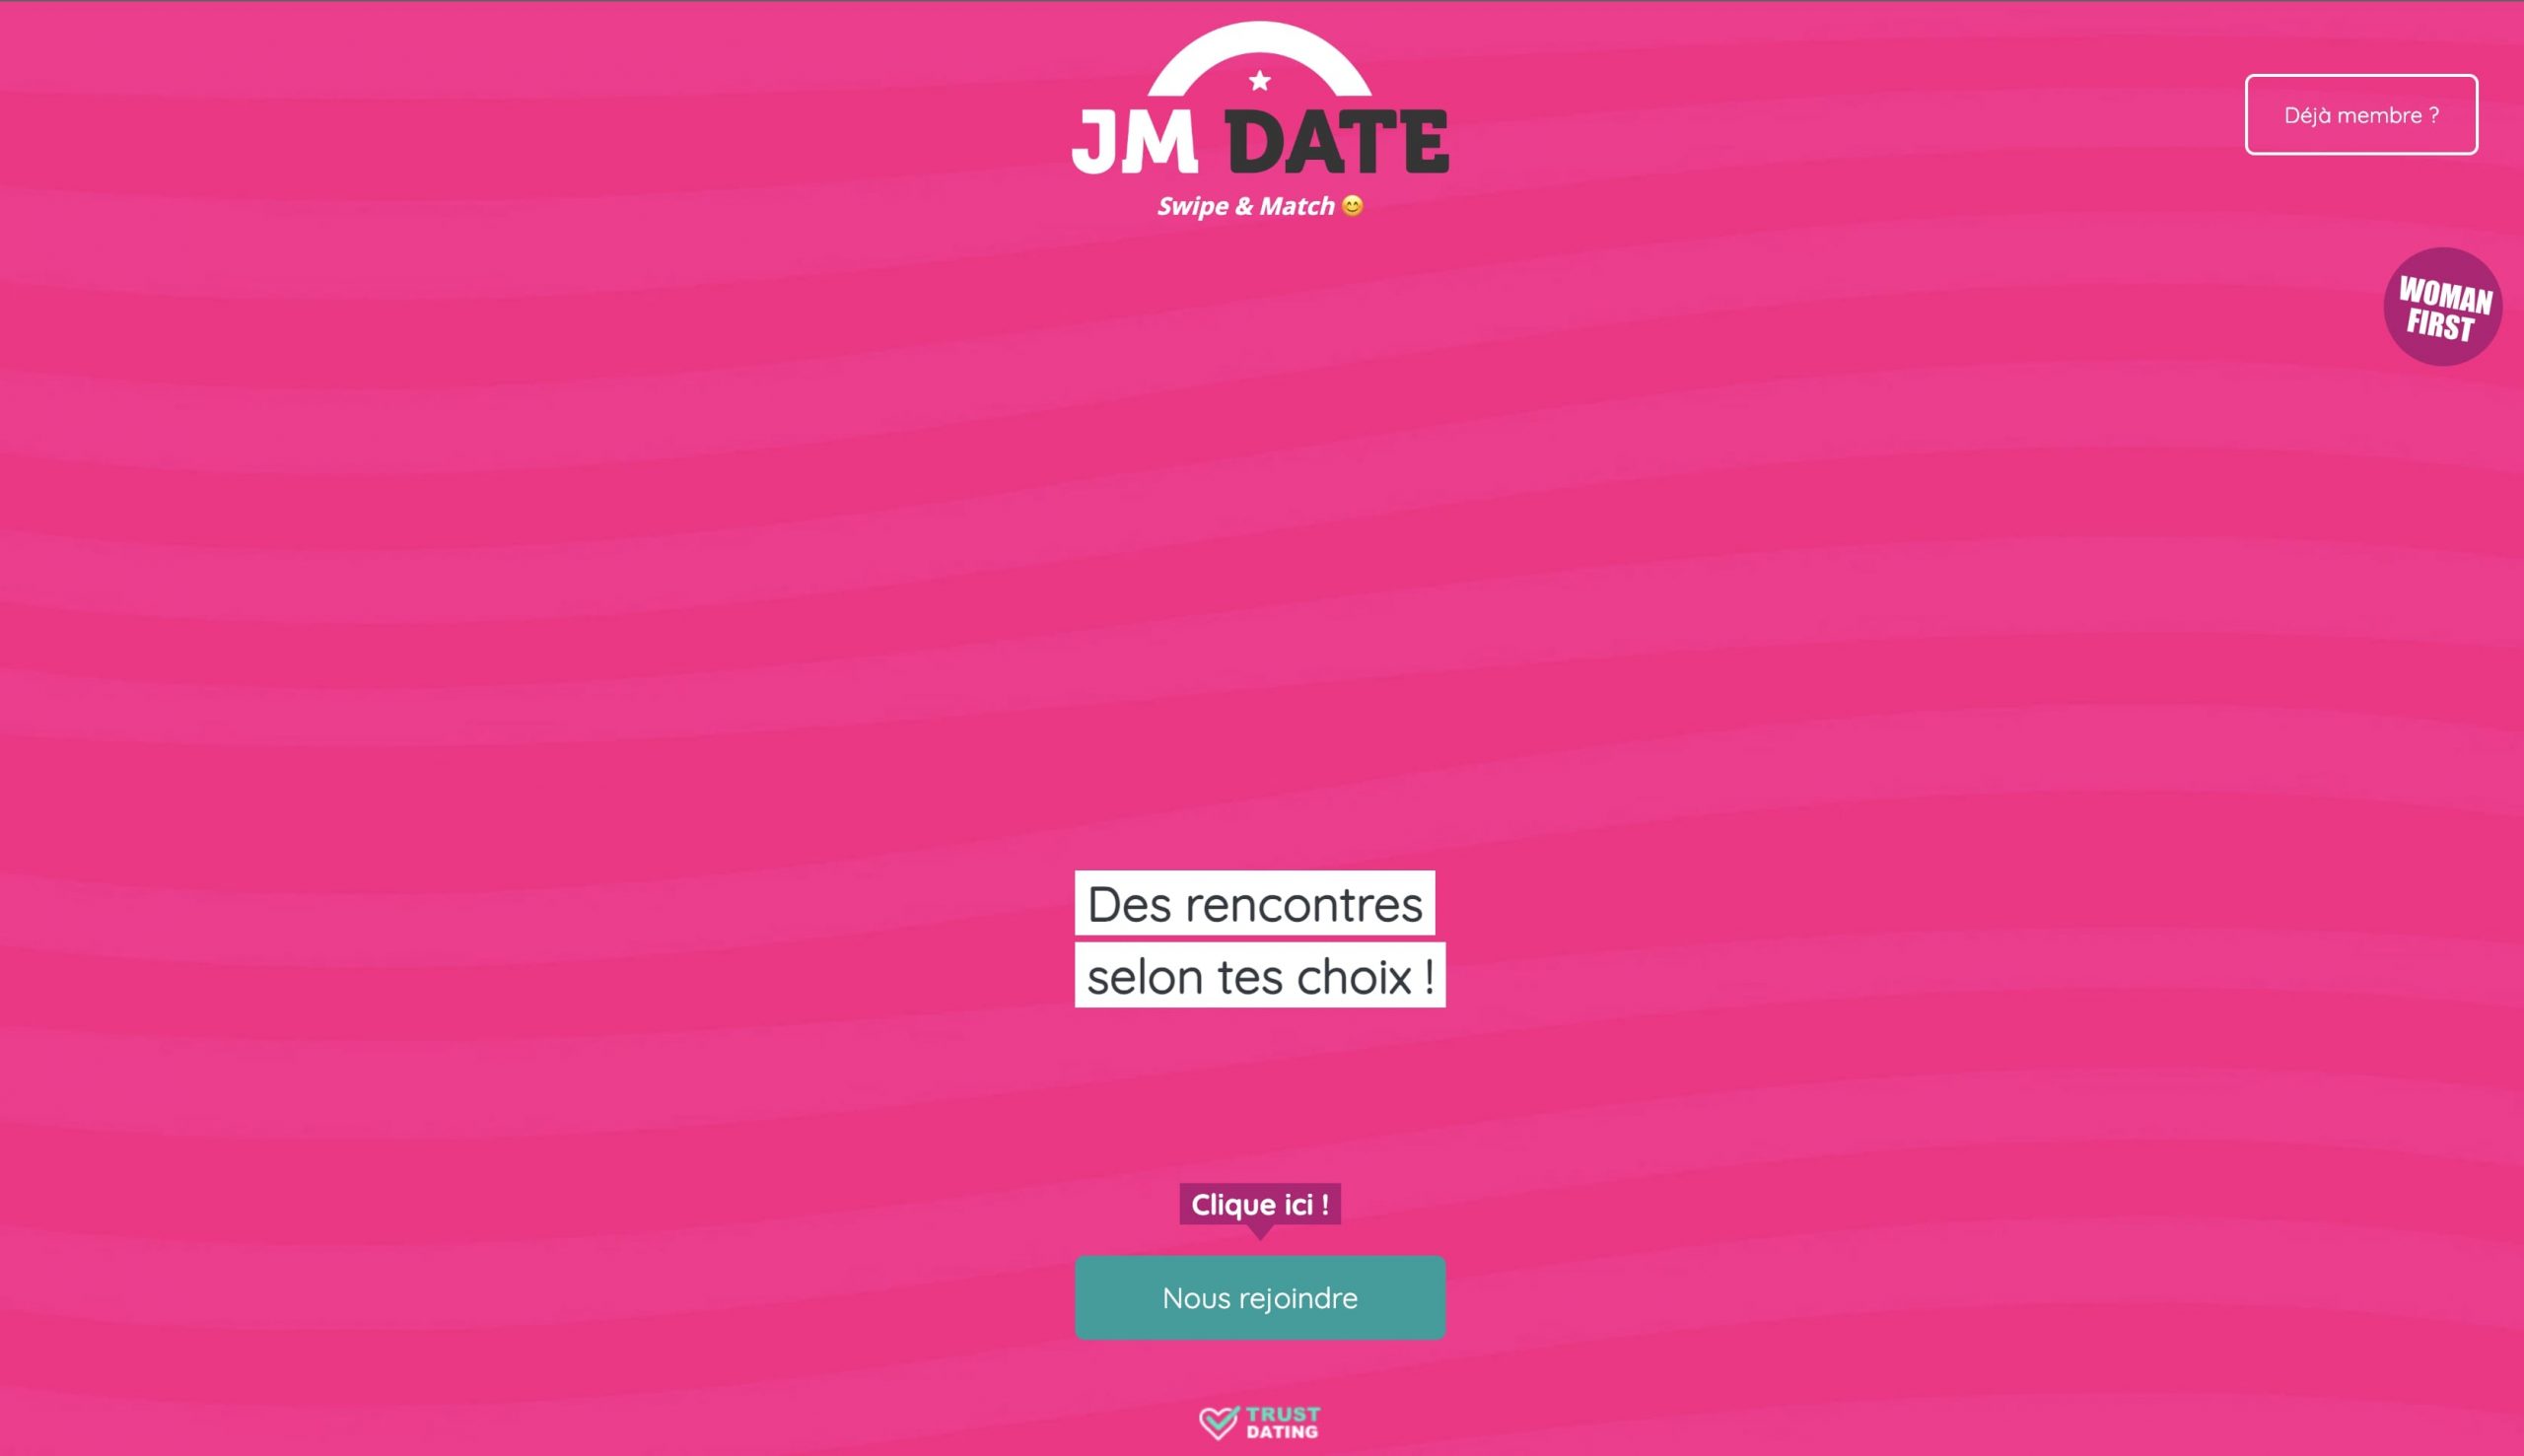 JM DATE